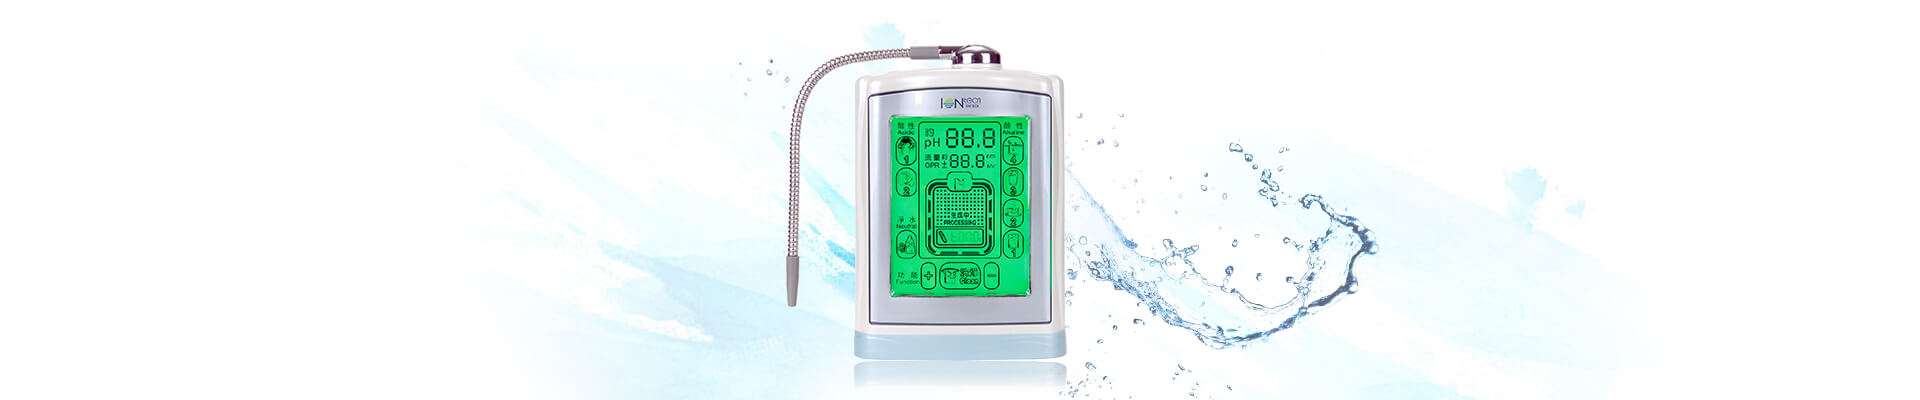 IT-377/IT-577 - Alkaline Water Ionizer Machine